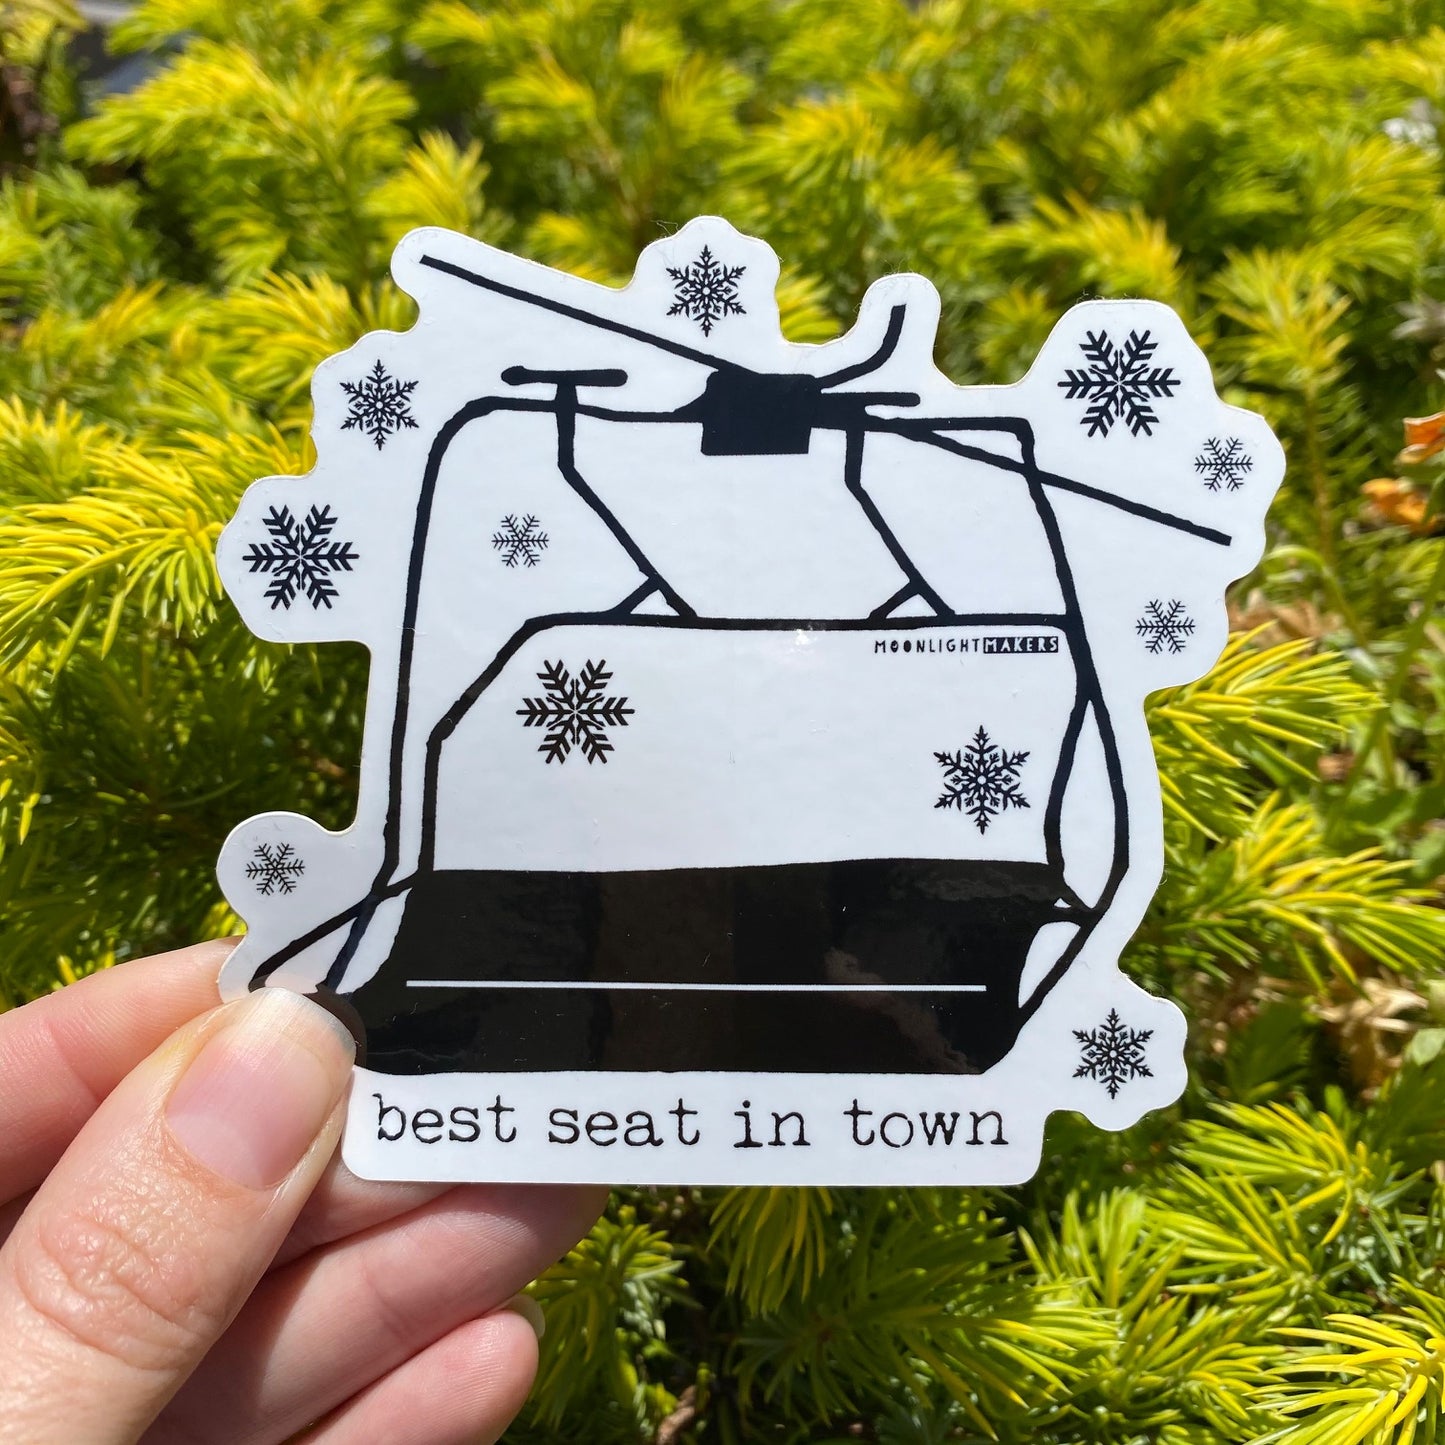 Best Seat In Town - Die Cut Sticker - MoonlightMakers